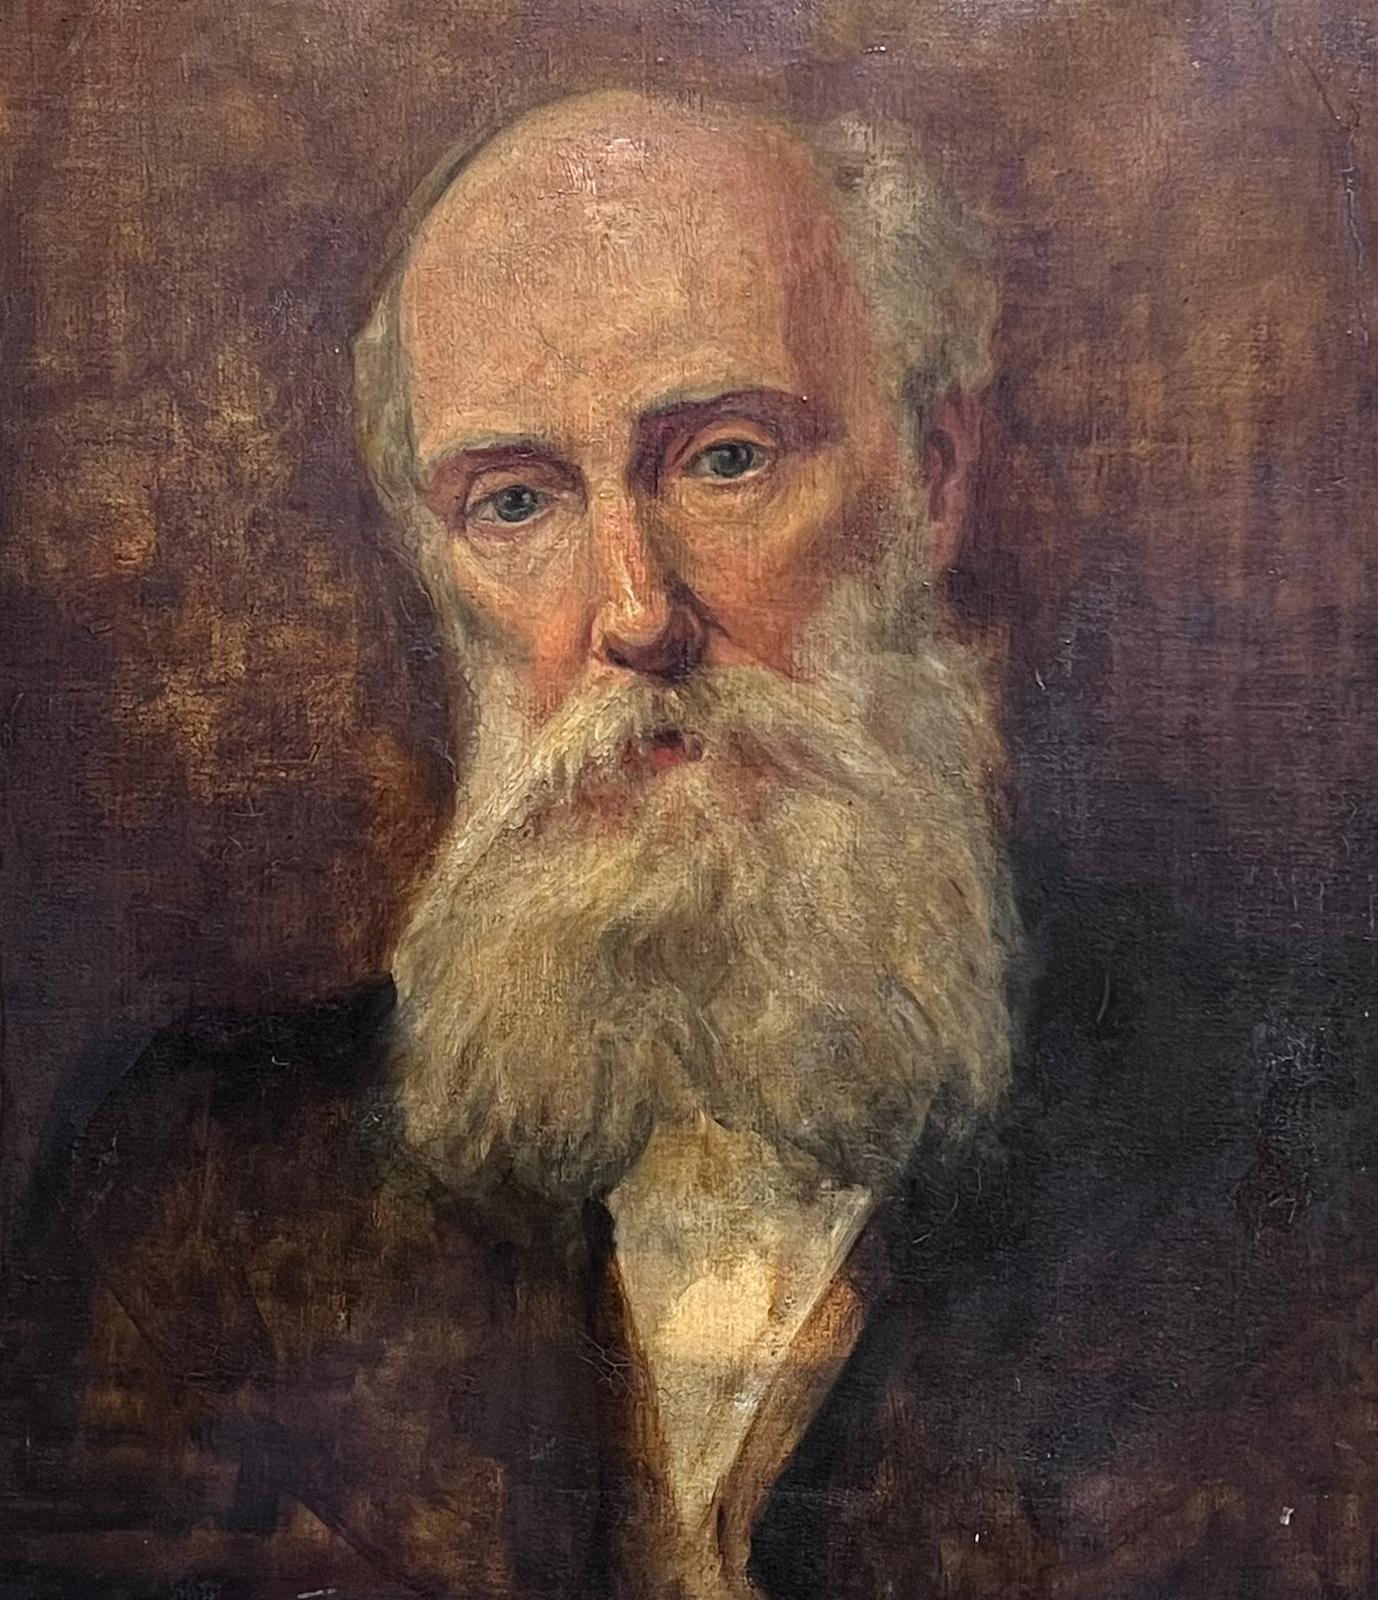 Feines impressionistisches Ölgemälde, Porträt eines bearden Mannes, erstaunlicher Rahmen, d. 1901 – Painting von British c. 1901